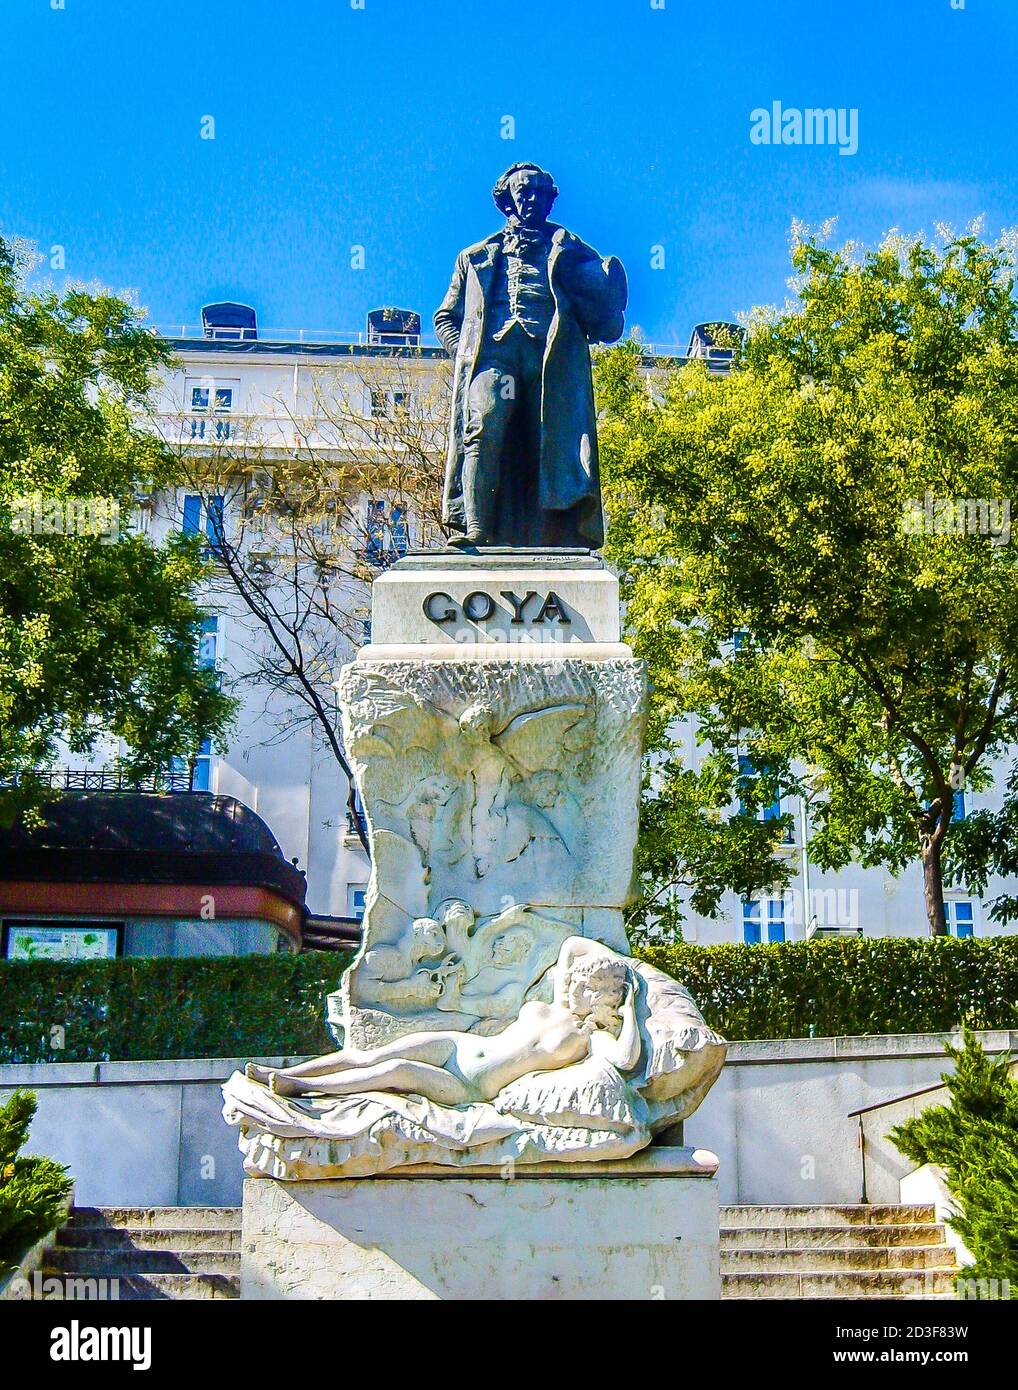 Monumento al pittore Francisco de Goya e Lucientes, realizzato dallo scultore Mariano Benlliure, accanto al Museo del Prado. Madrid, Spagna Foto Stock